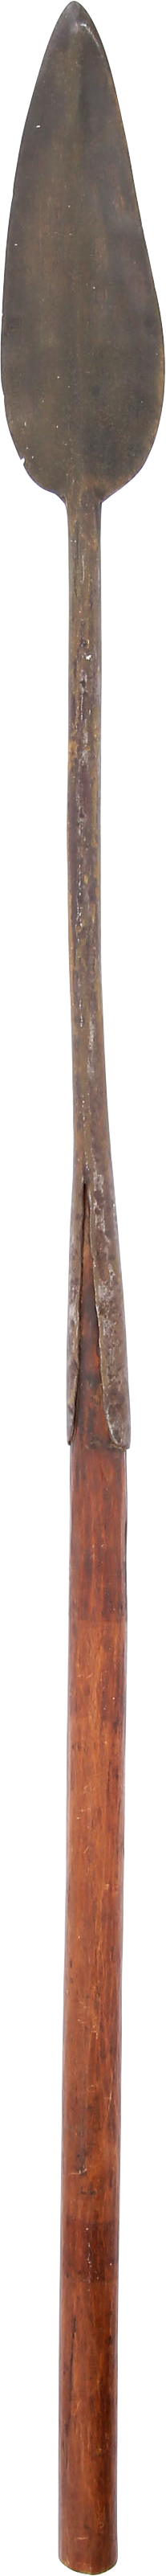 CONGOLESE SLAVER’S SPEAR C.1880 - Fagan Arms